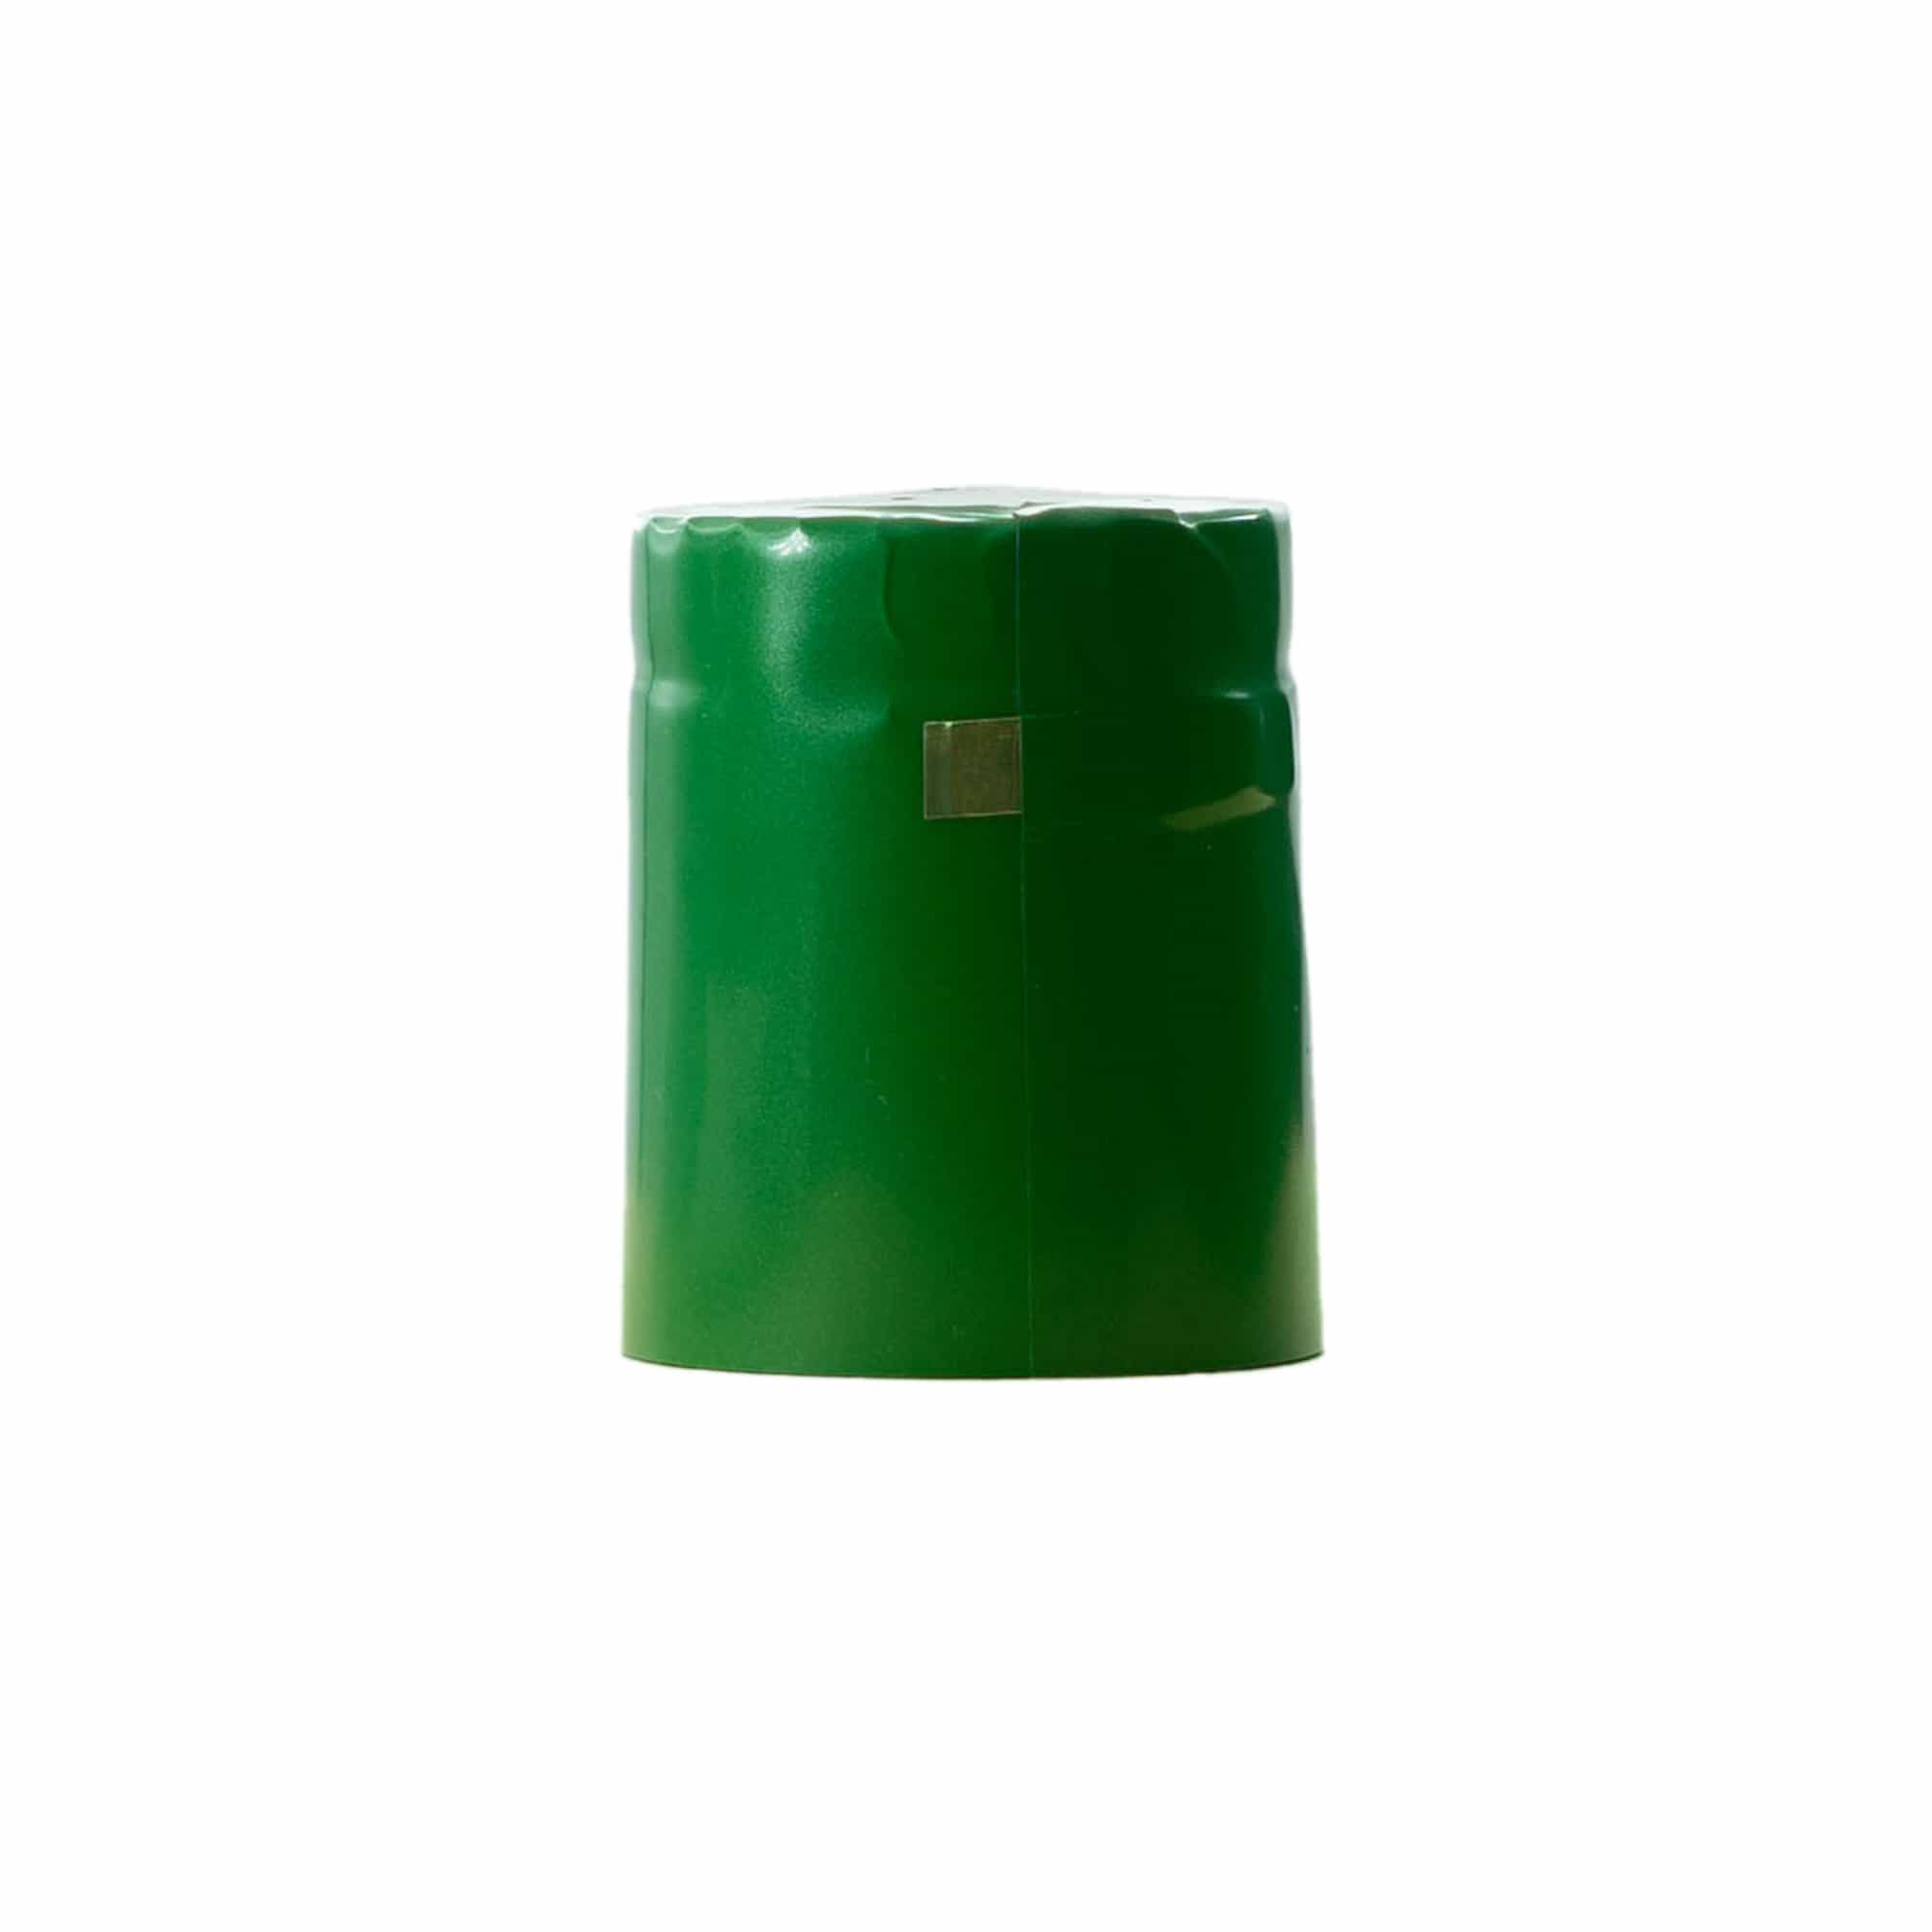 Kapturek termokurczliwy 32x41, tworzywo sztuczne PVC, kolor zielony